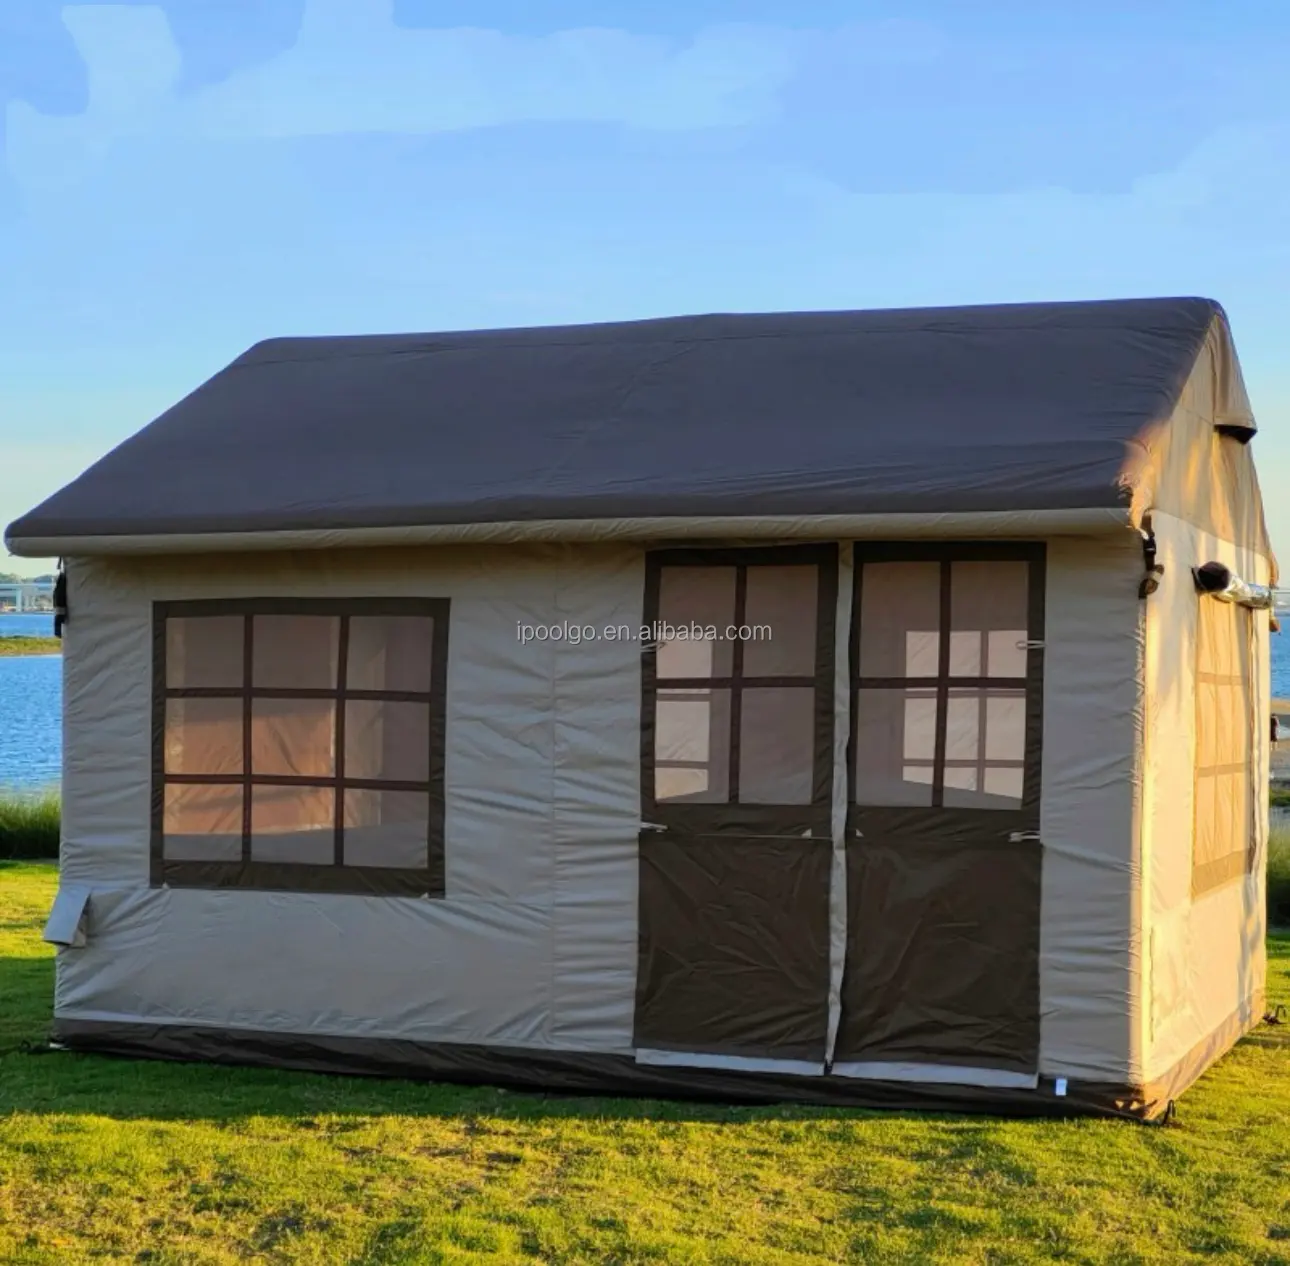 Offre Spéciale Camping IPOOLGO air tente gonflable étanche Portable tente extérieure gonflable